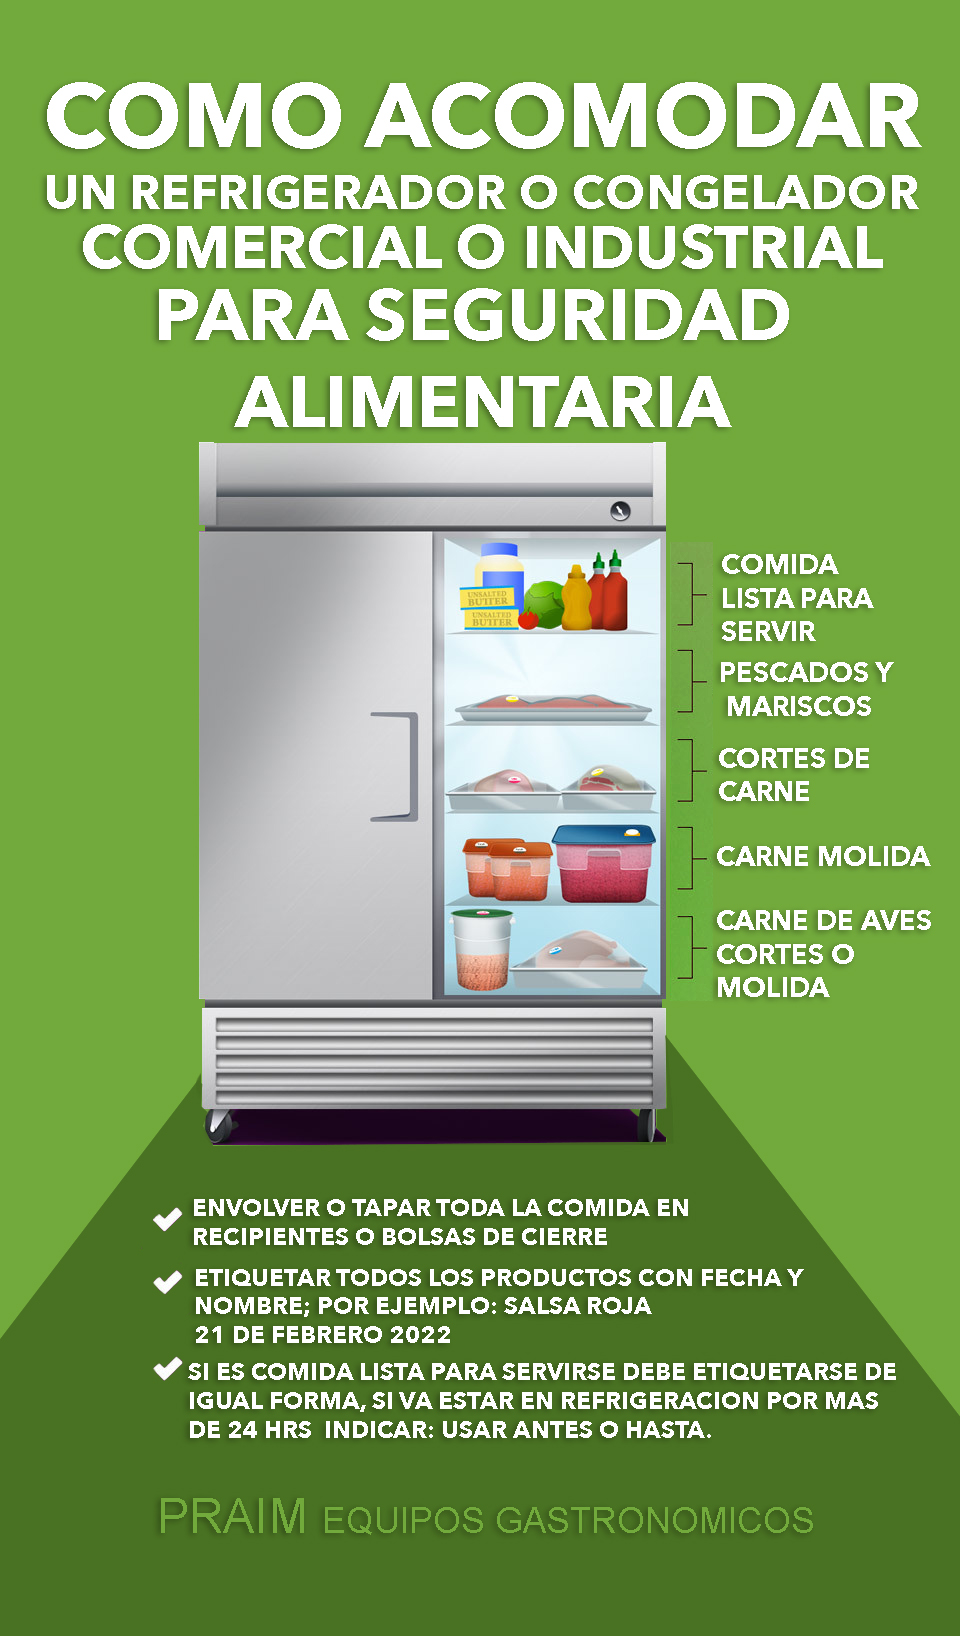 Precauciones al trabajar con refrigeradores industriales – Revista Cero  Grados